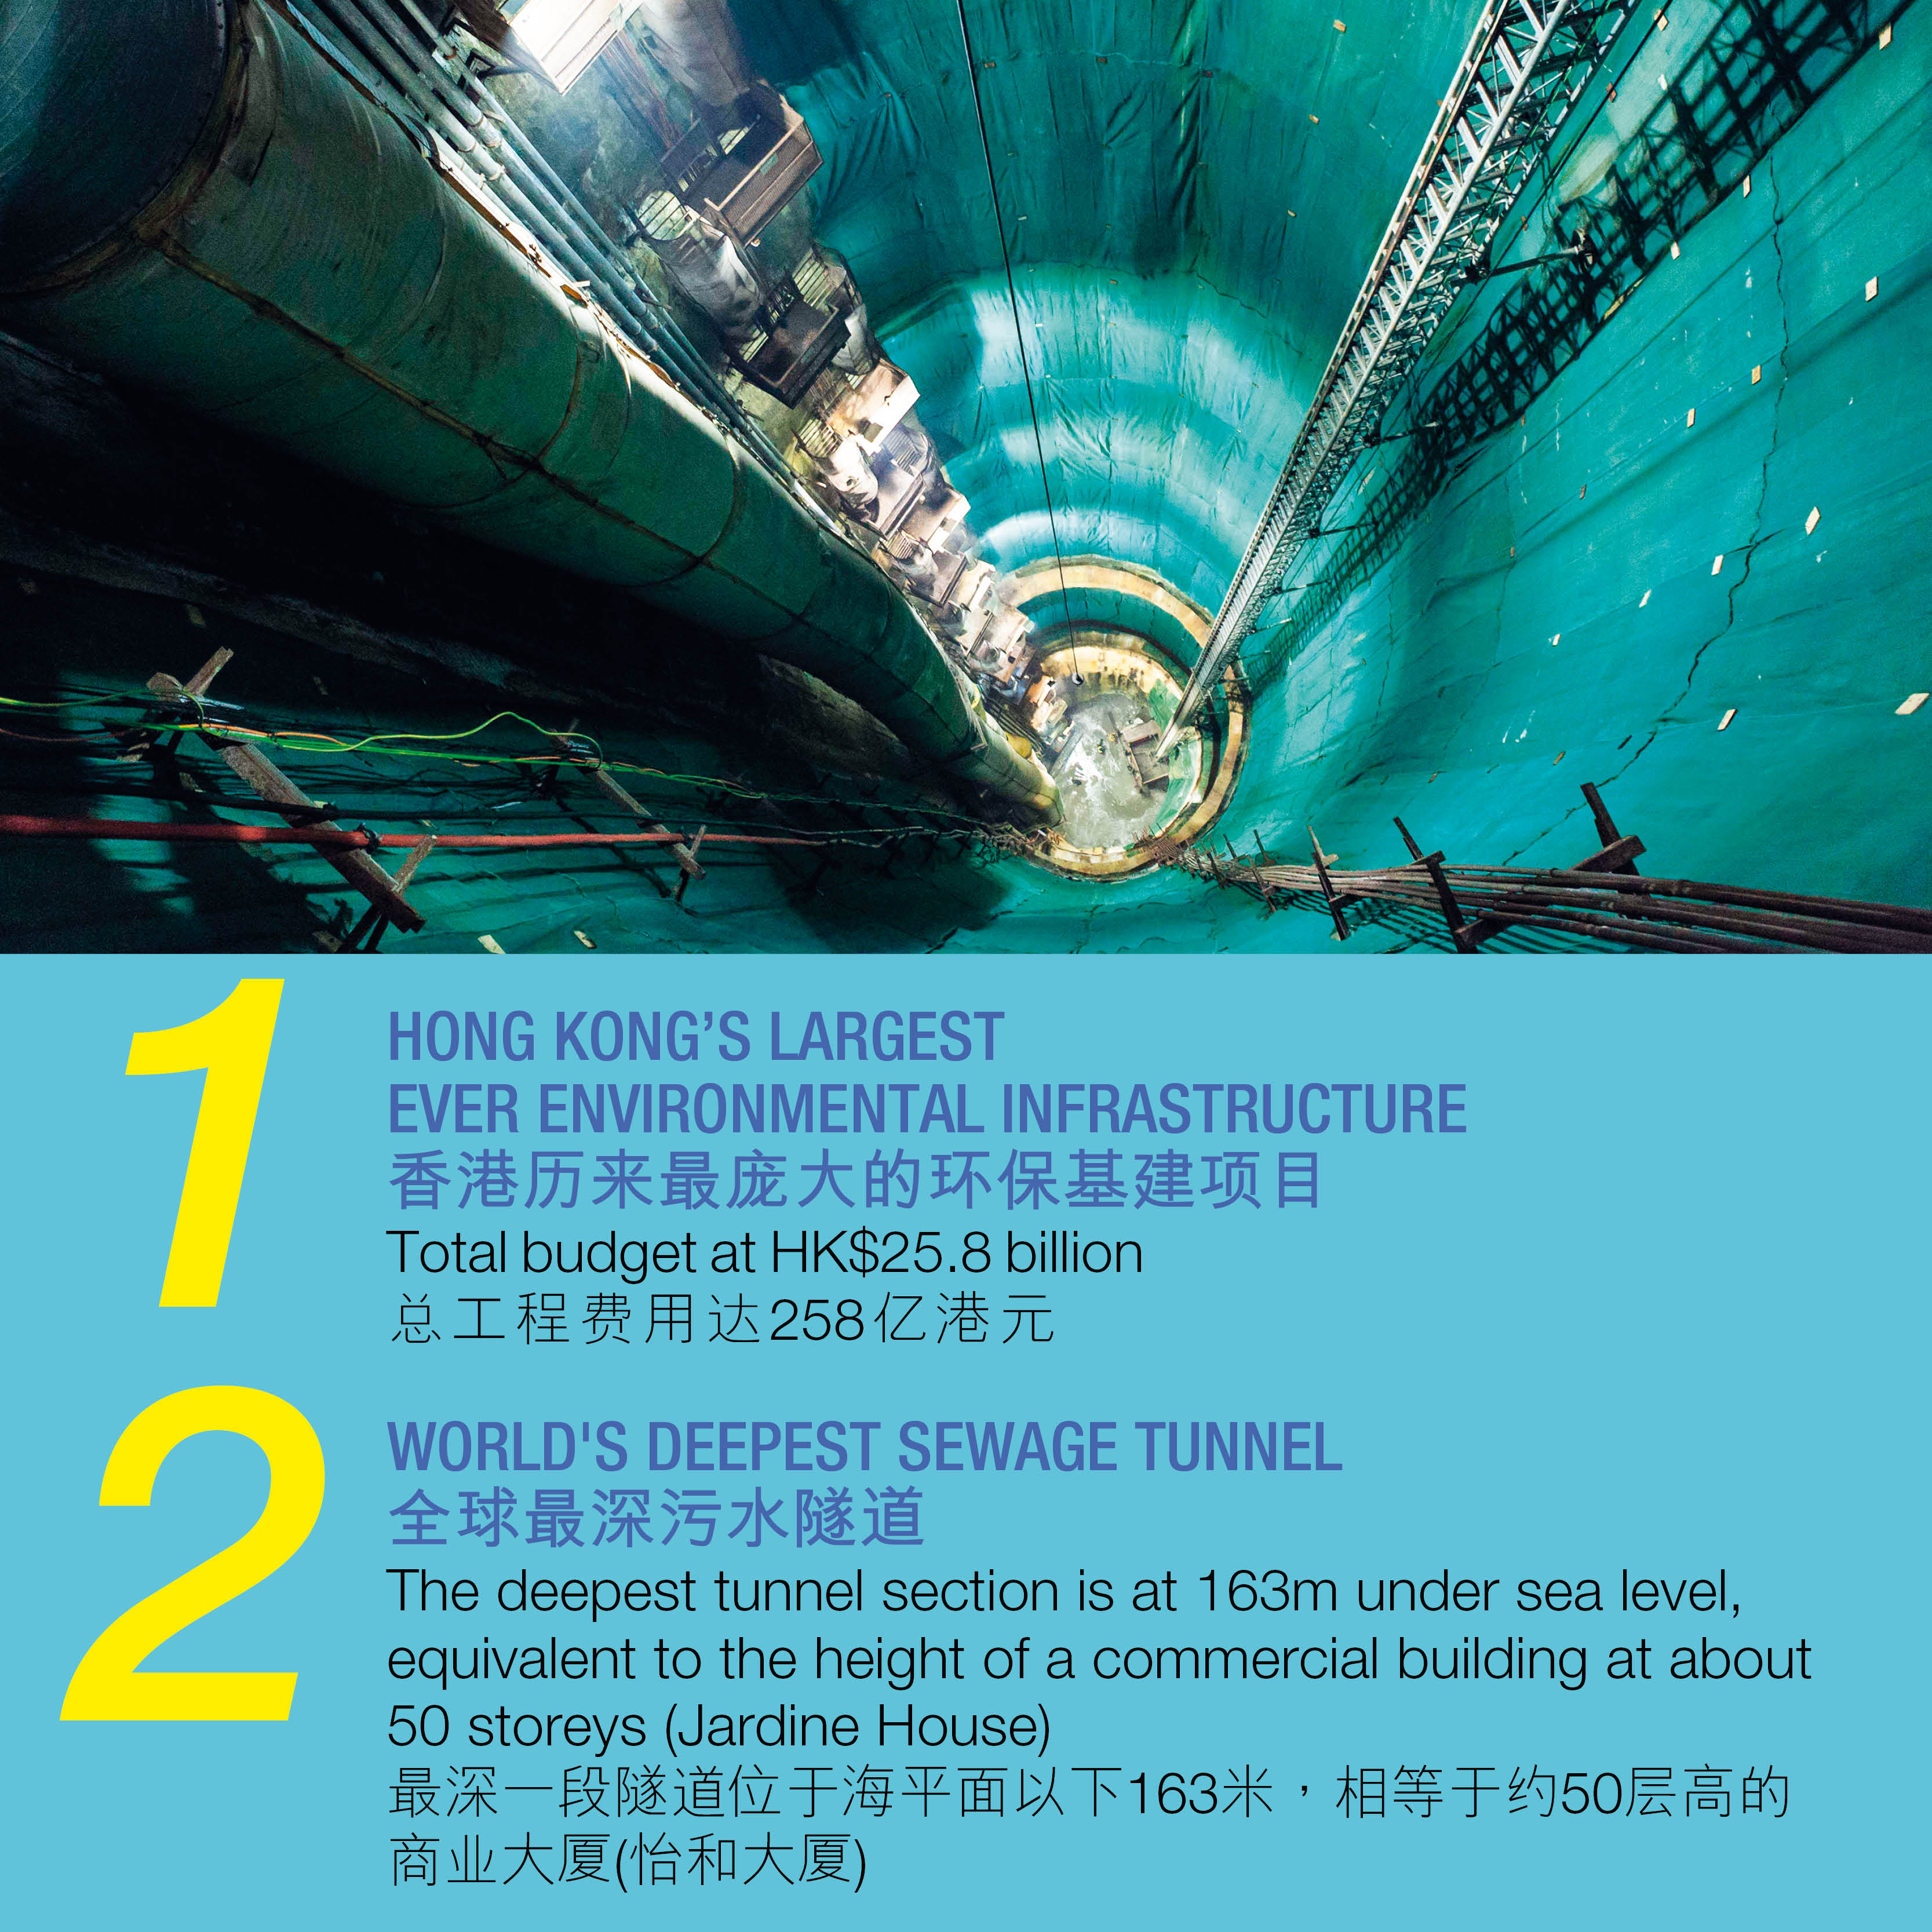 1.香港历来最庞大的环保基建项目总工程费用达258亿港元 2. 全球最深污水隧道